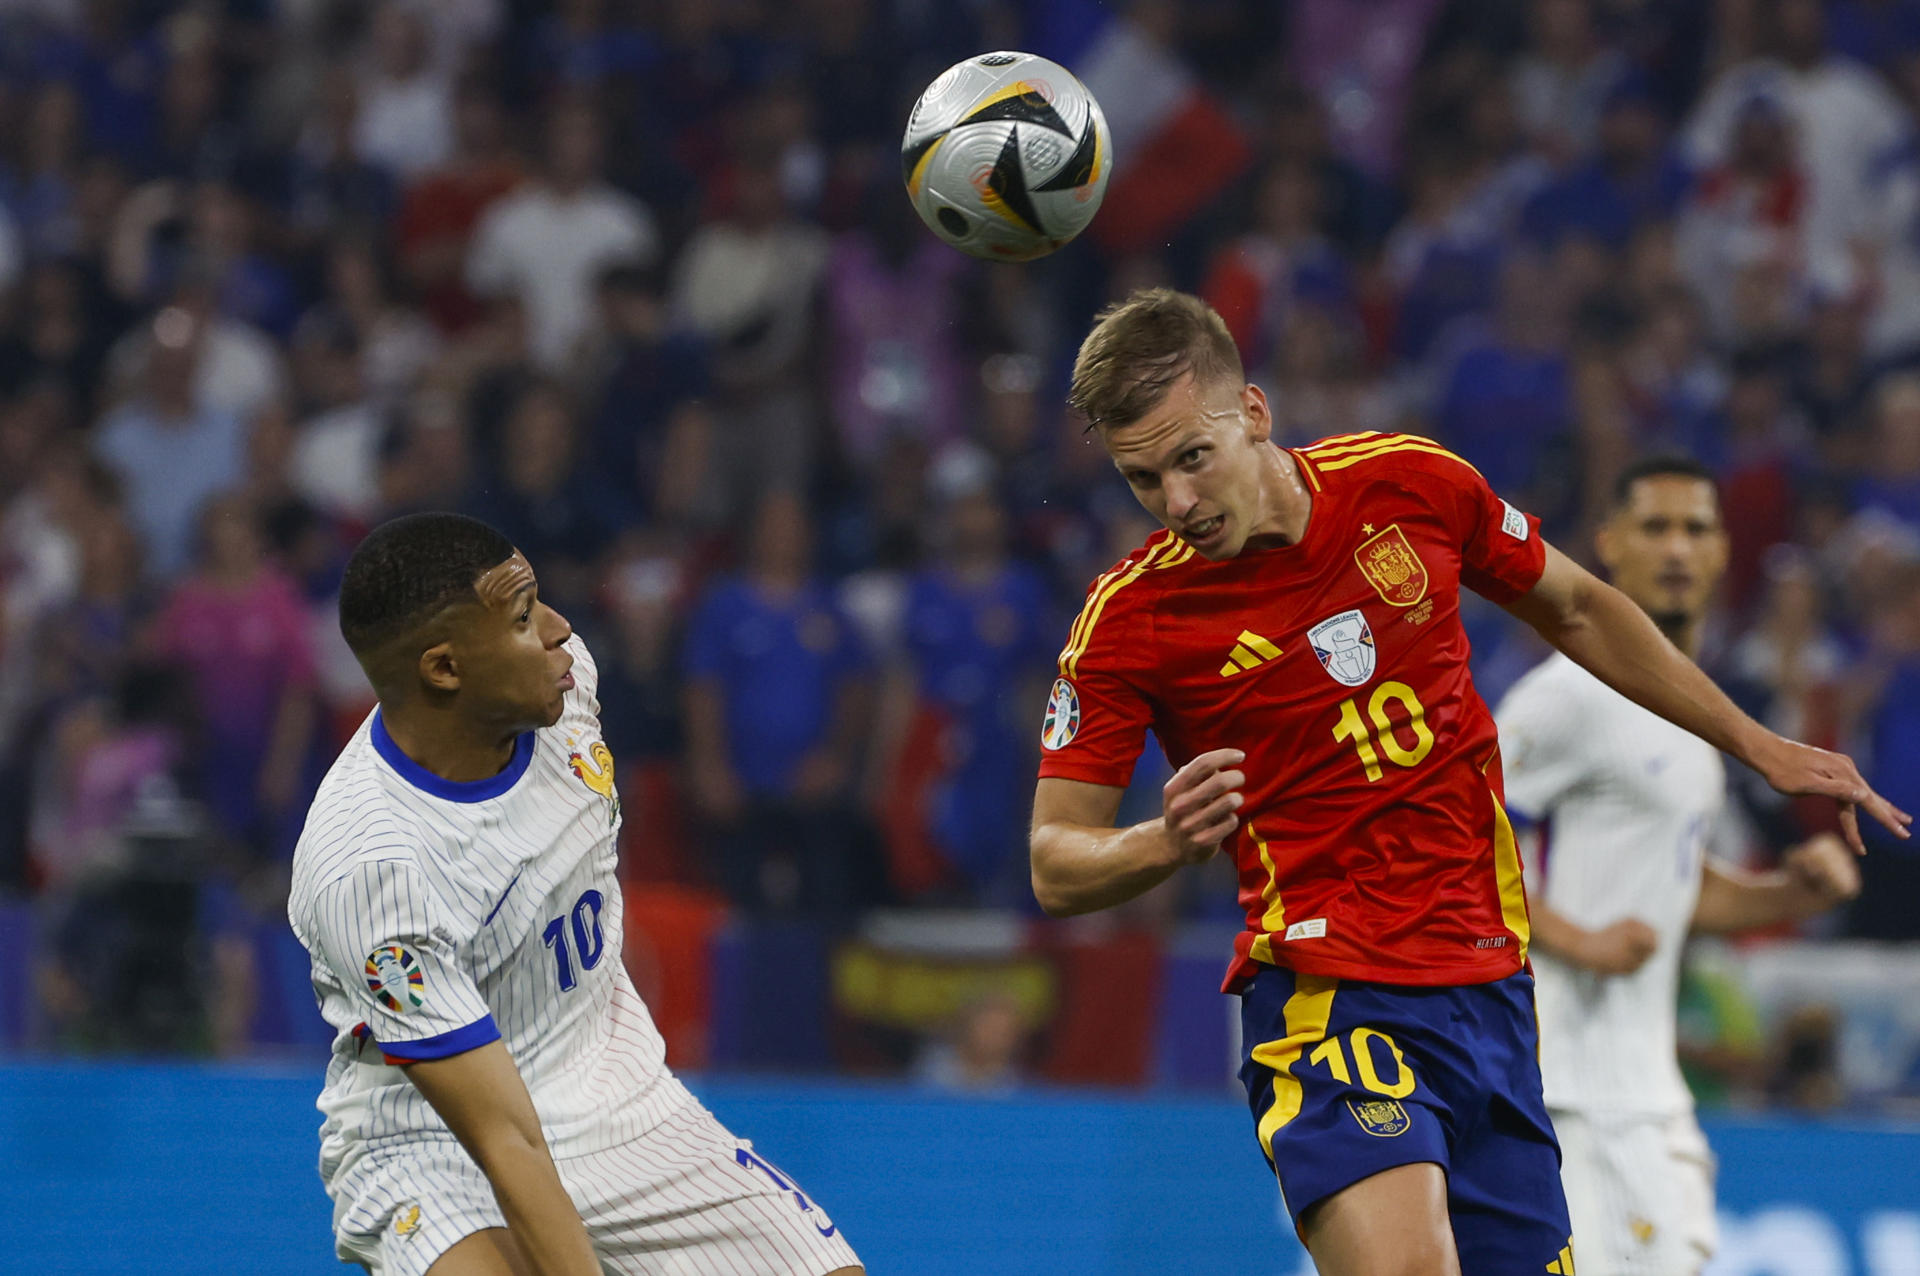 España gana a una decepcionante Francia y regresa a una final de la Eurocopa (2-1)